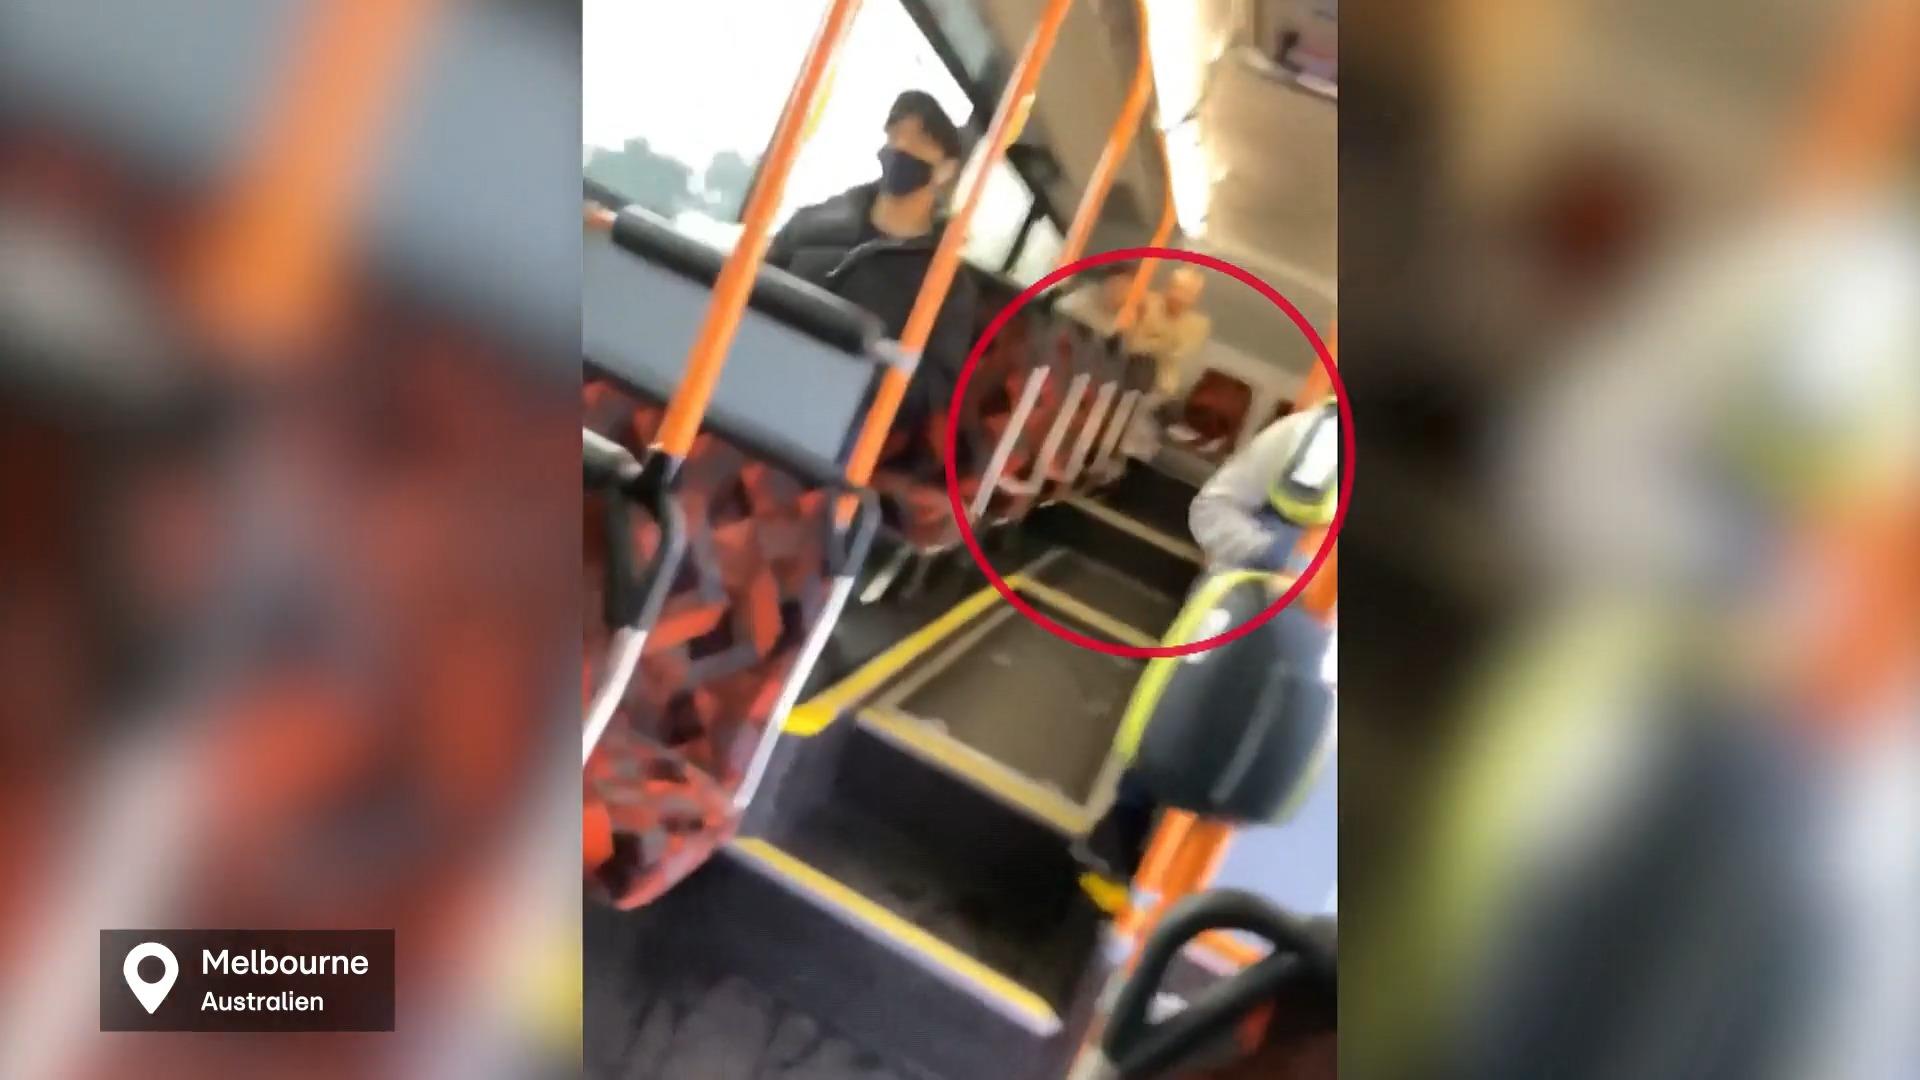 Pärchen hat Sex im Bus - und ein Fahrgast rastet aus What the f**k!